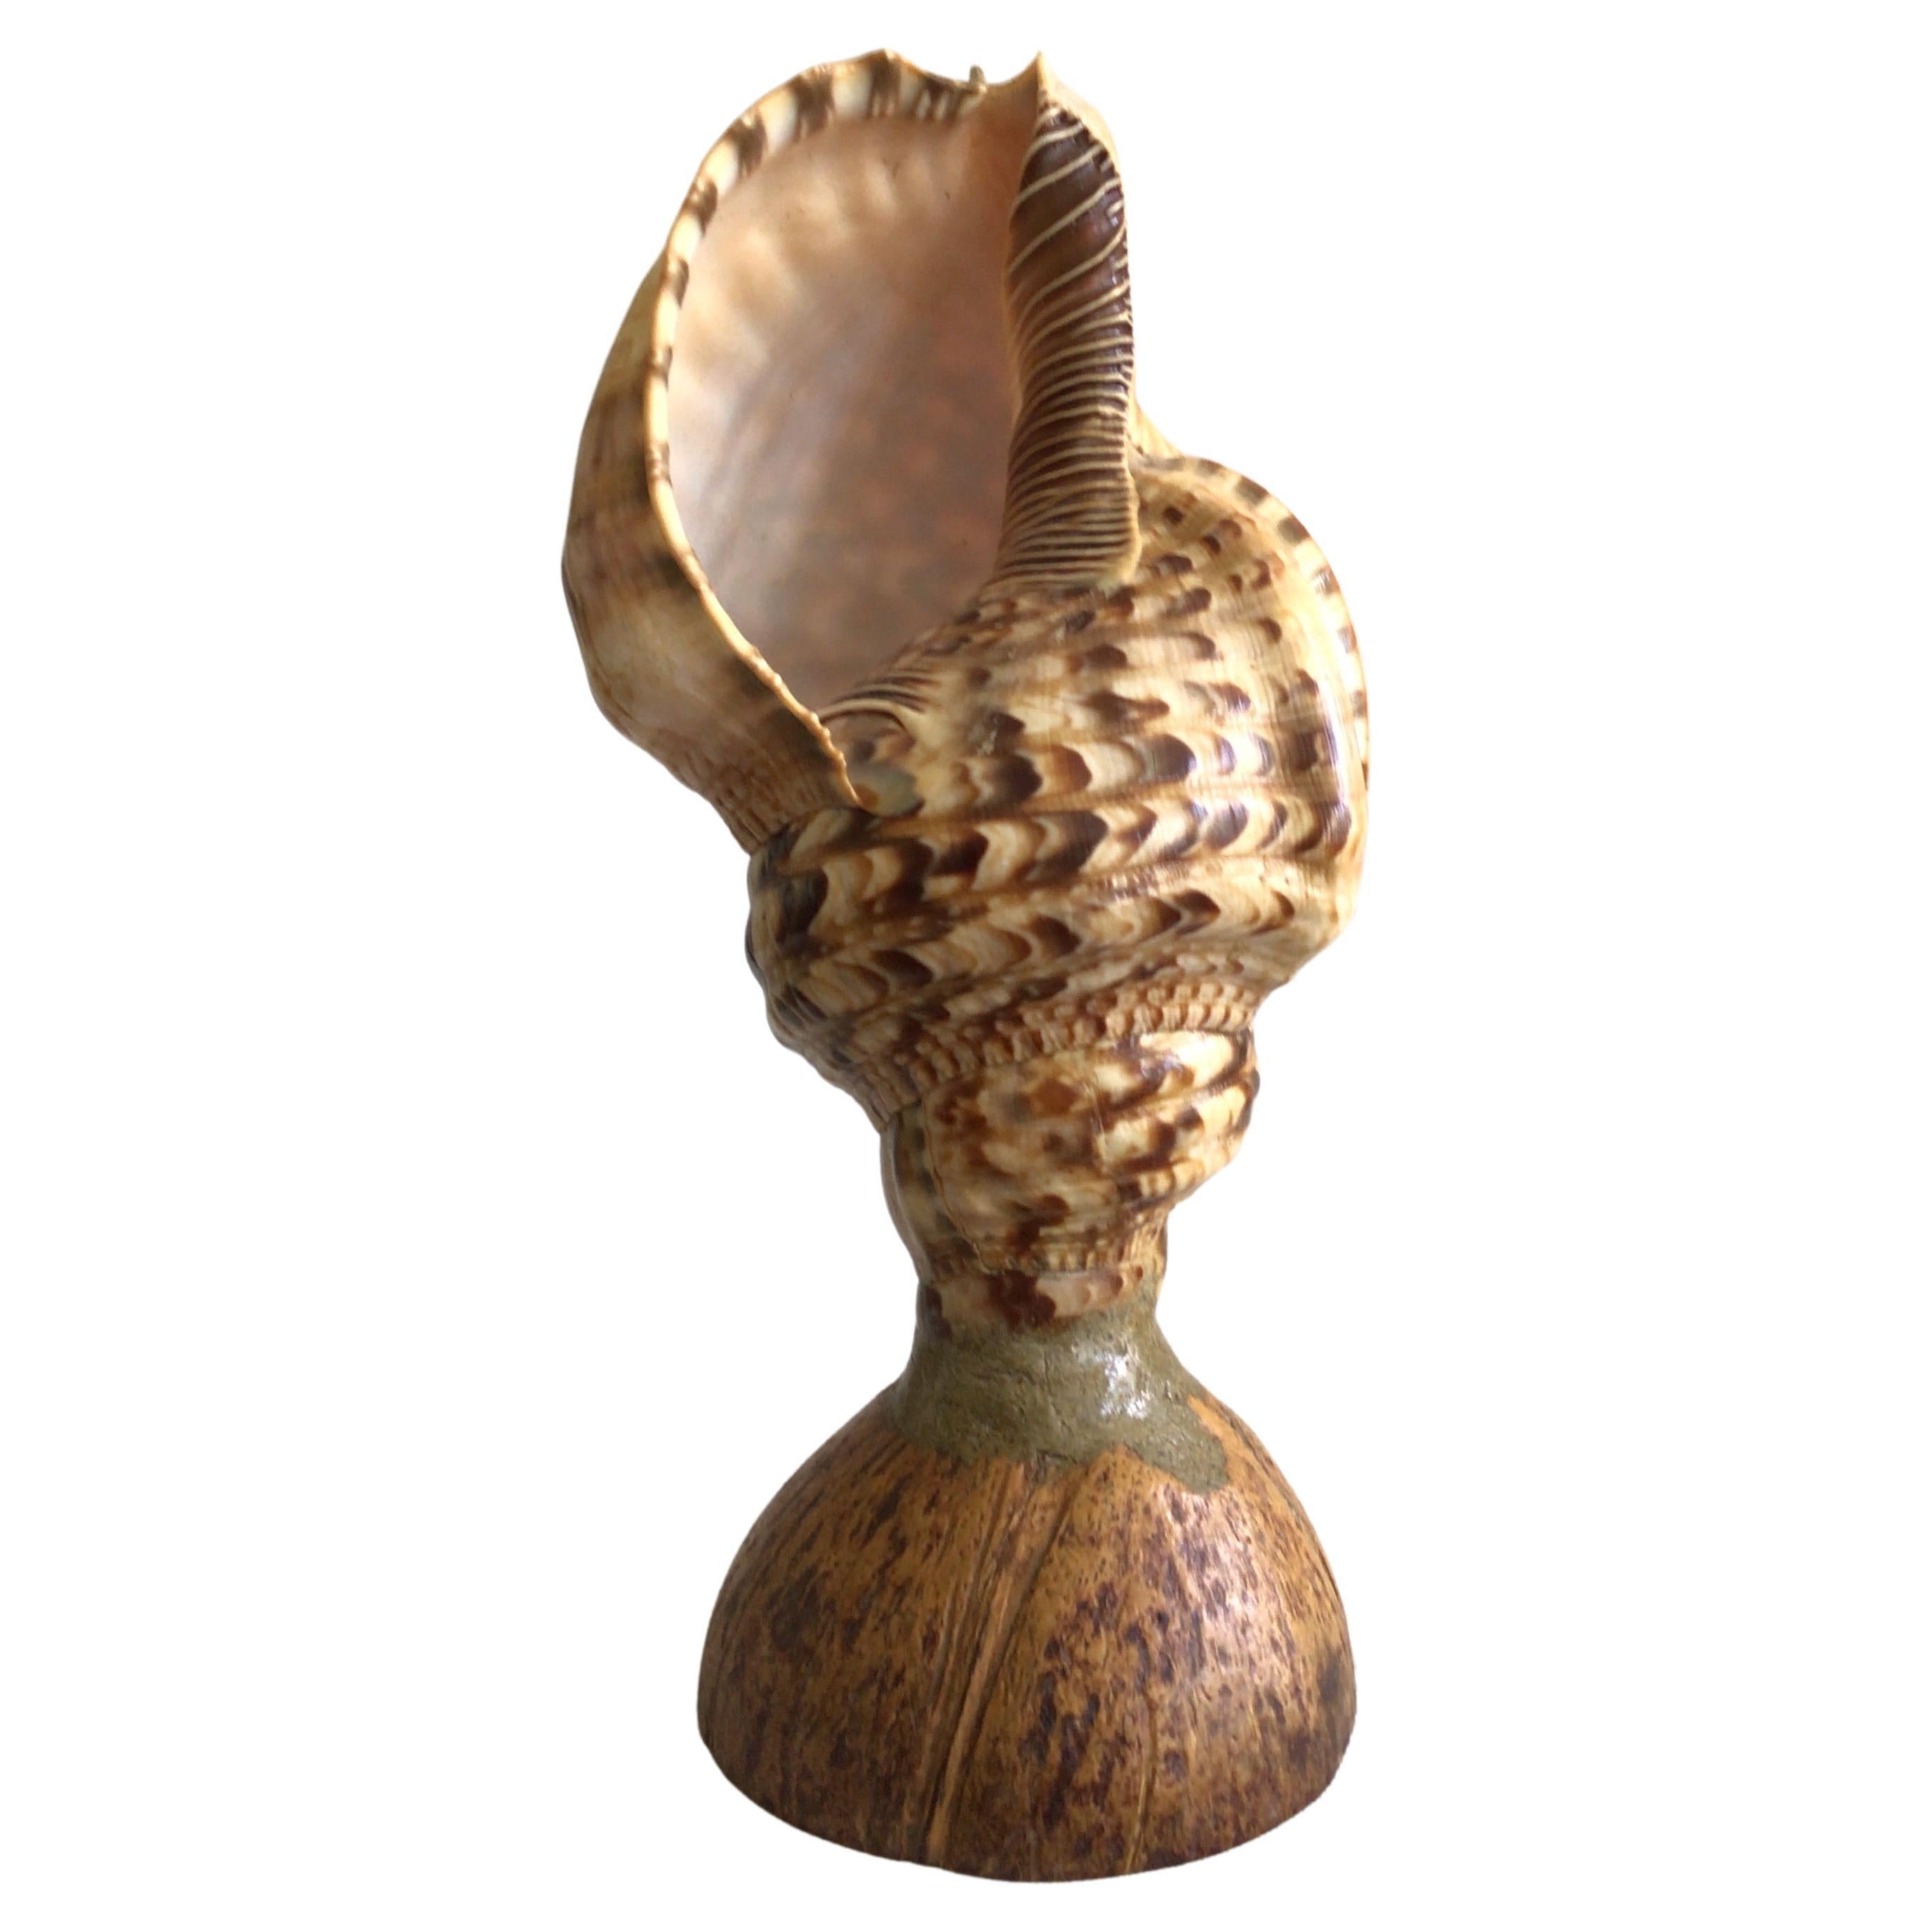 Triton Conch Shell Lampe des années 1940 sur base de noix de coco